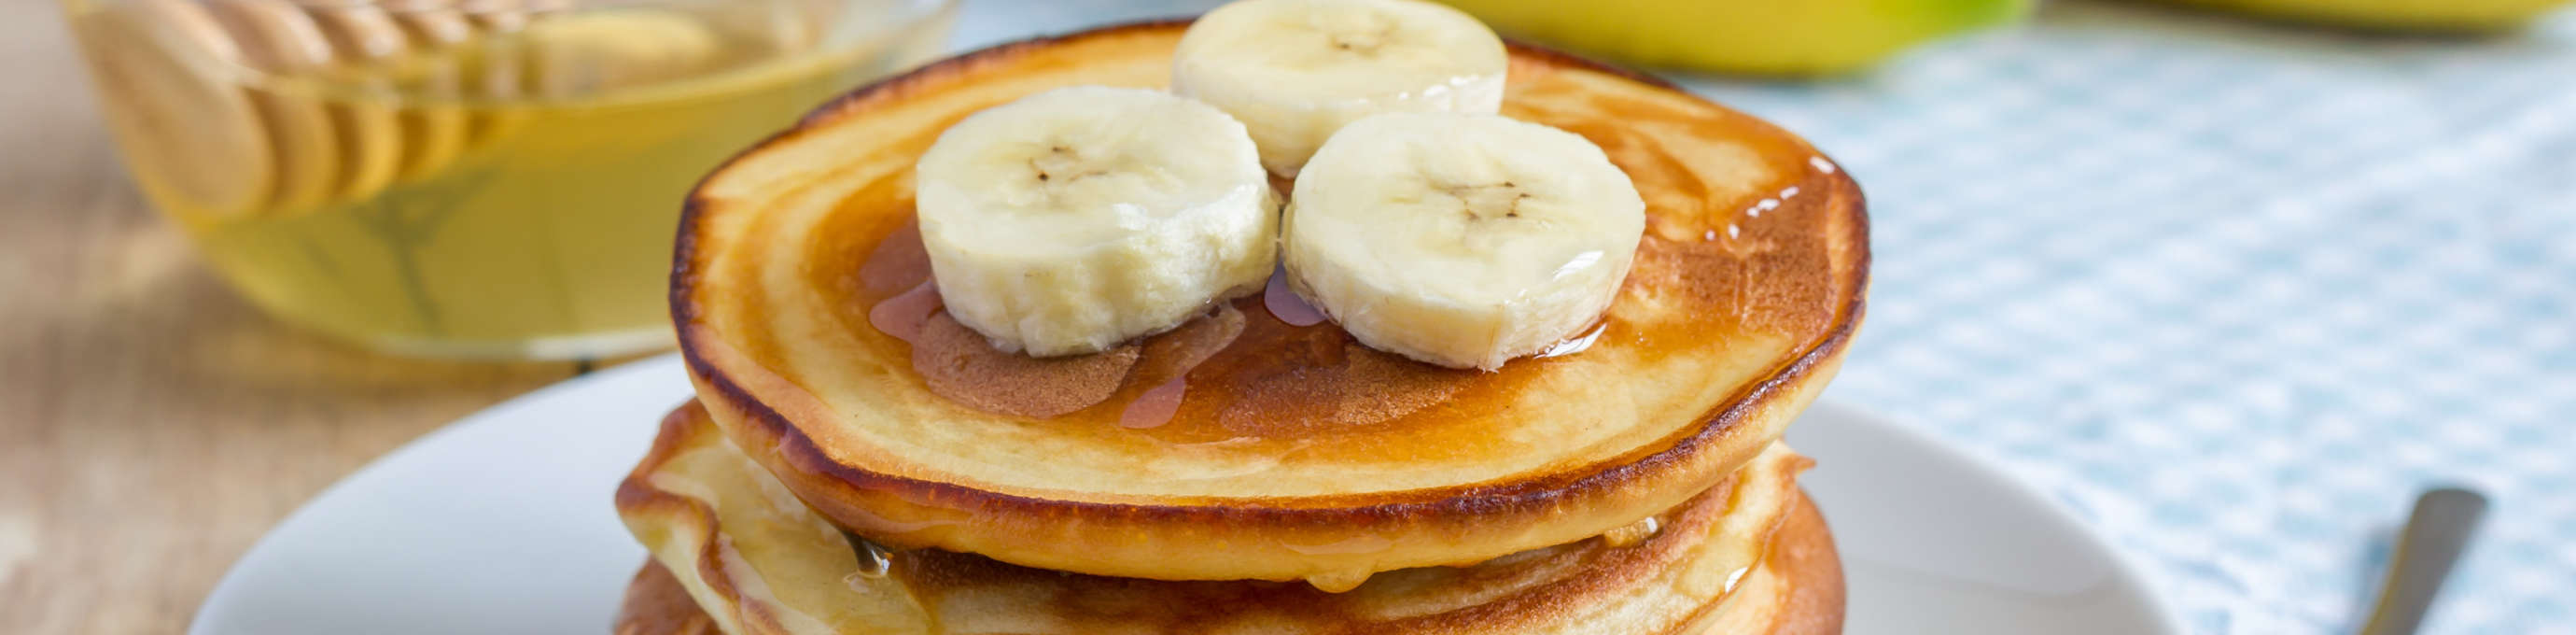 Gestapelte Pancakes aus Gerstoni Gerstenflocken mit Honig überzogen und mit Bananenscheiben garniert, liegend auf weißem Teller